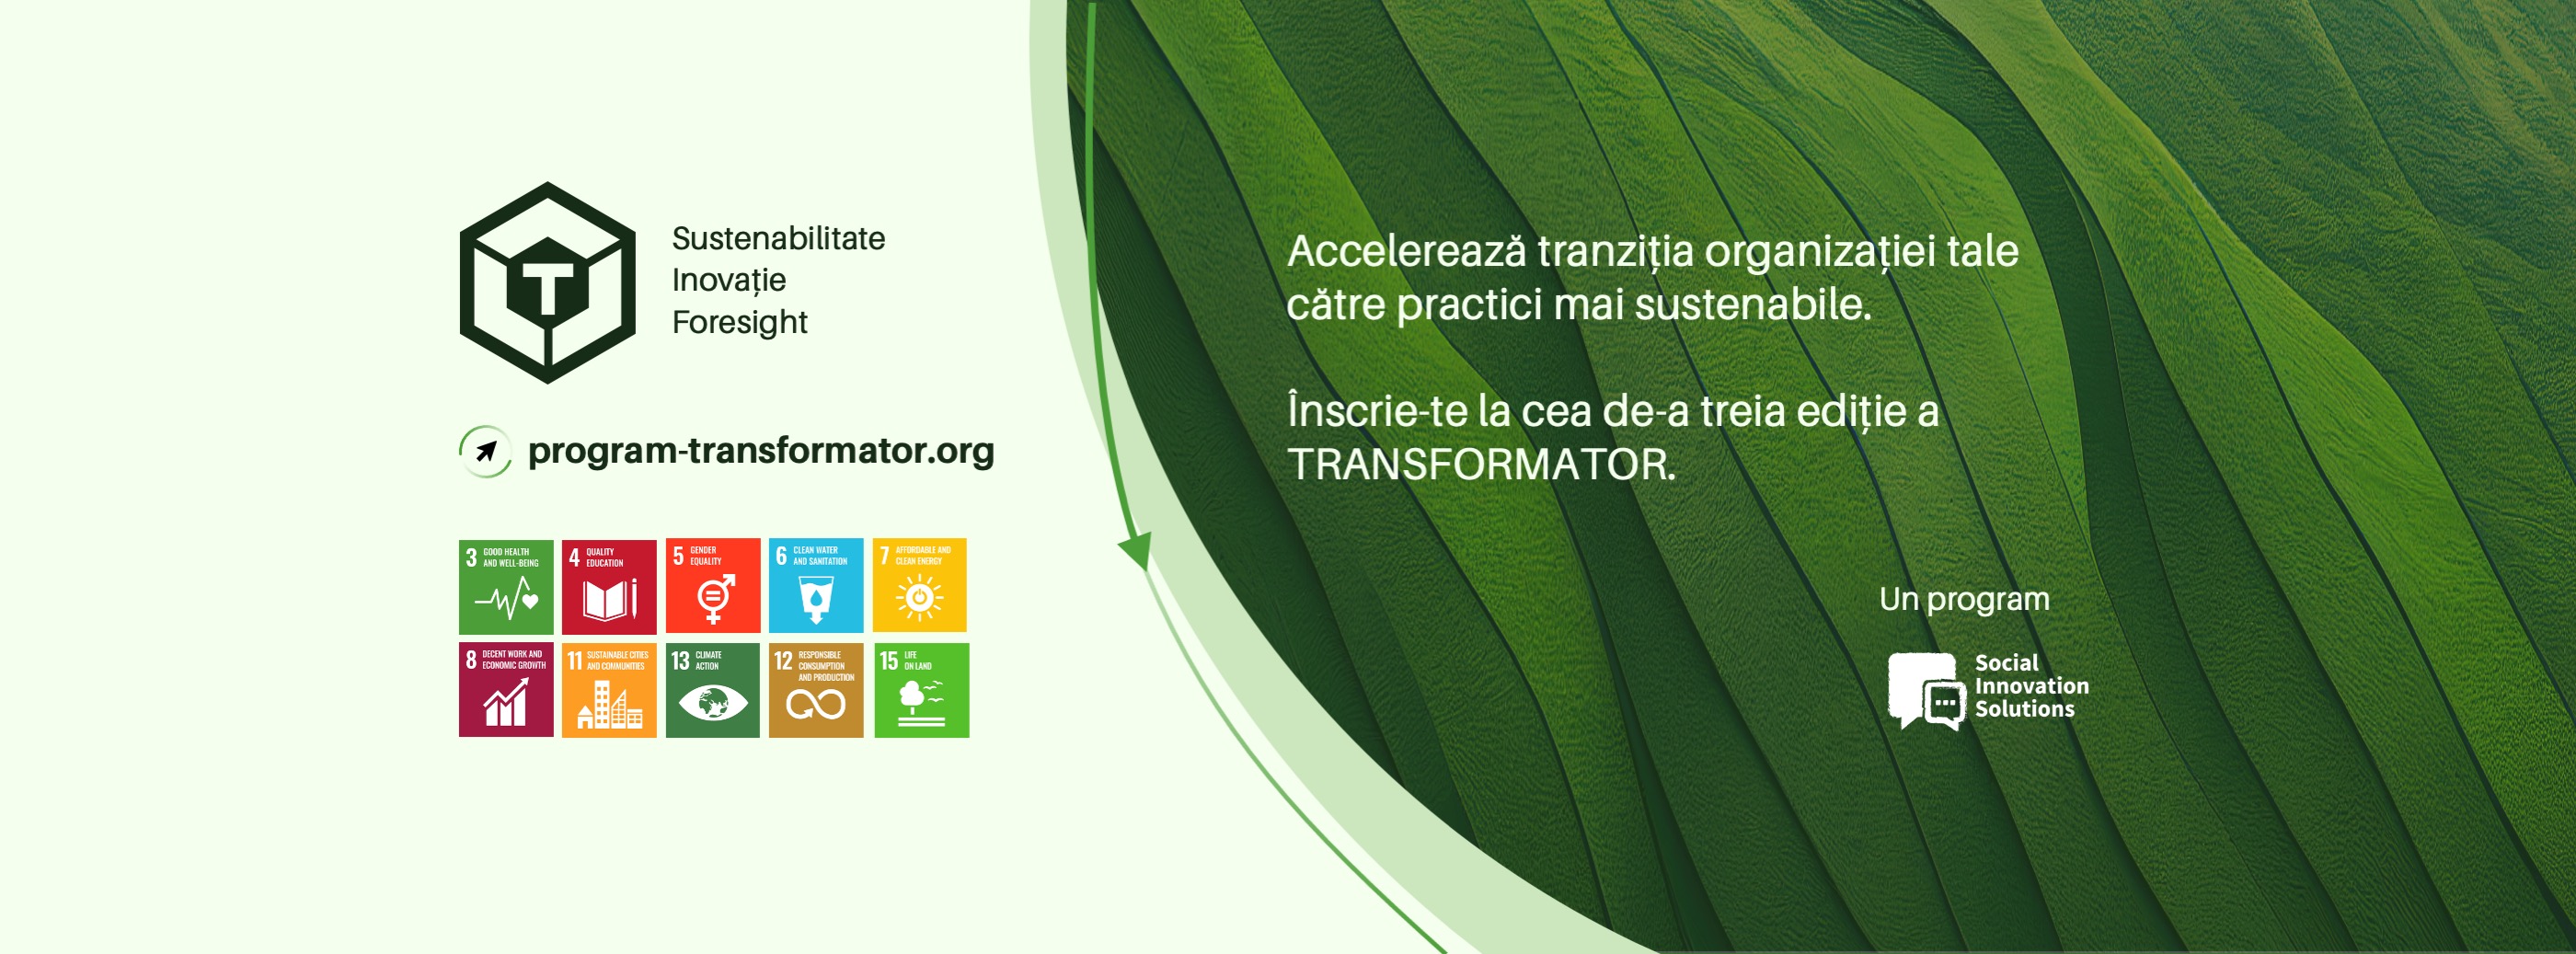 Banner al programului Transformator, pentru transformarea sustenabila a organizatiilor